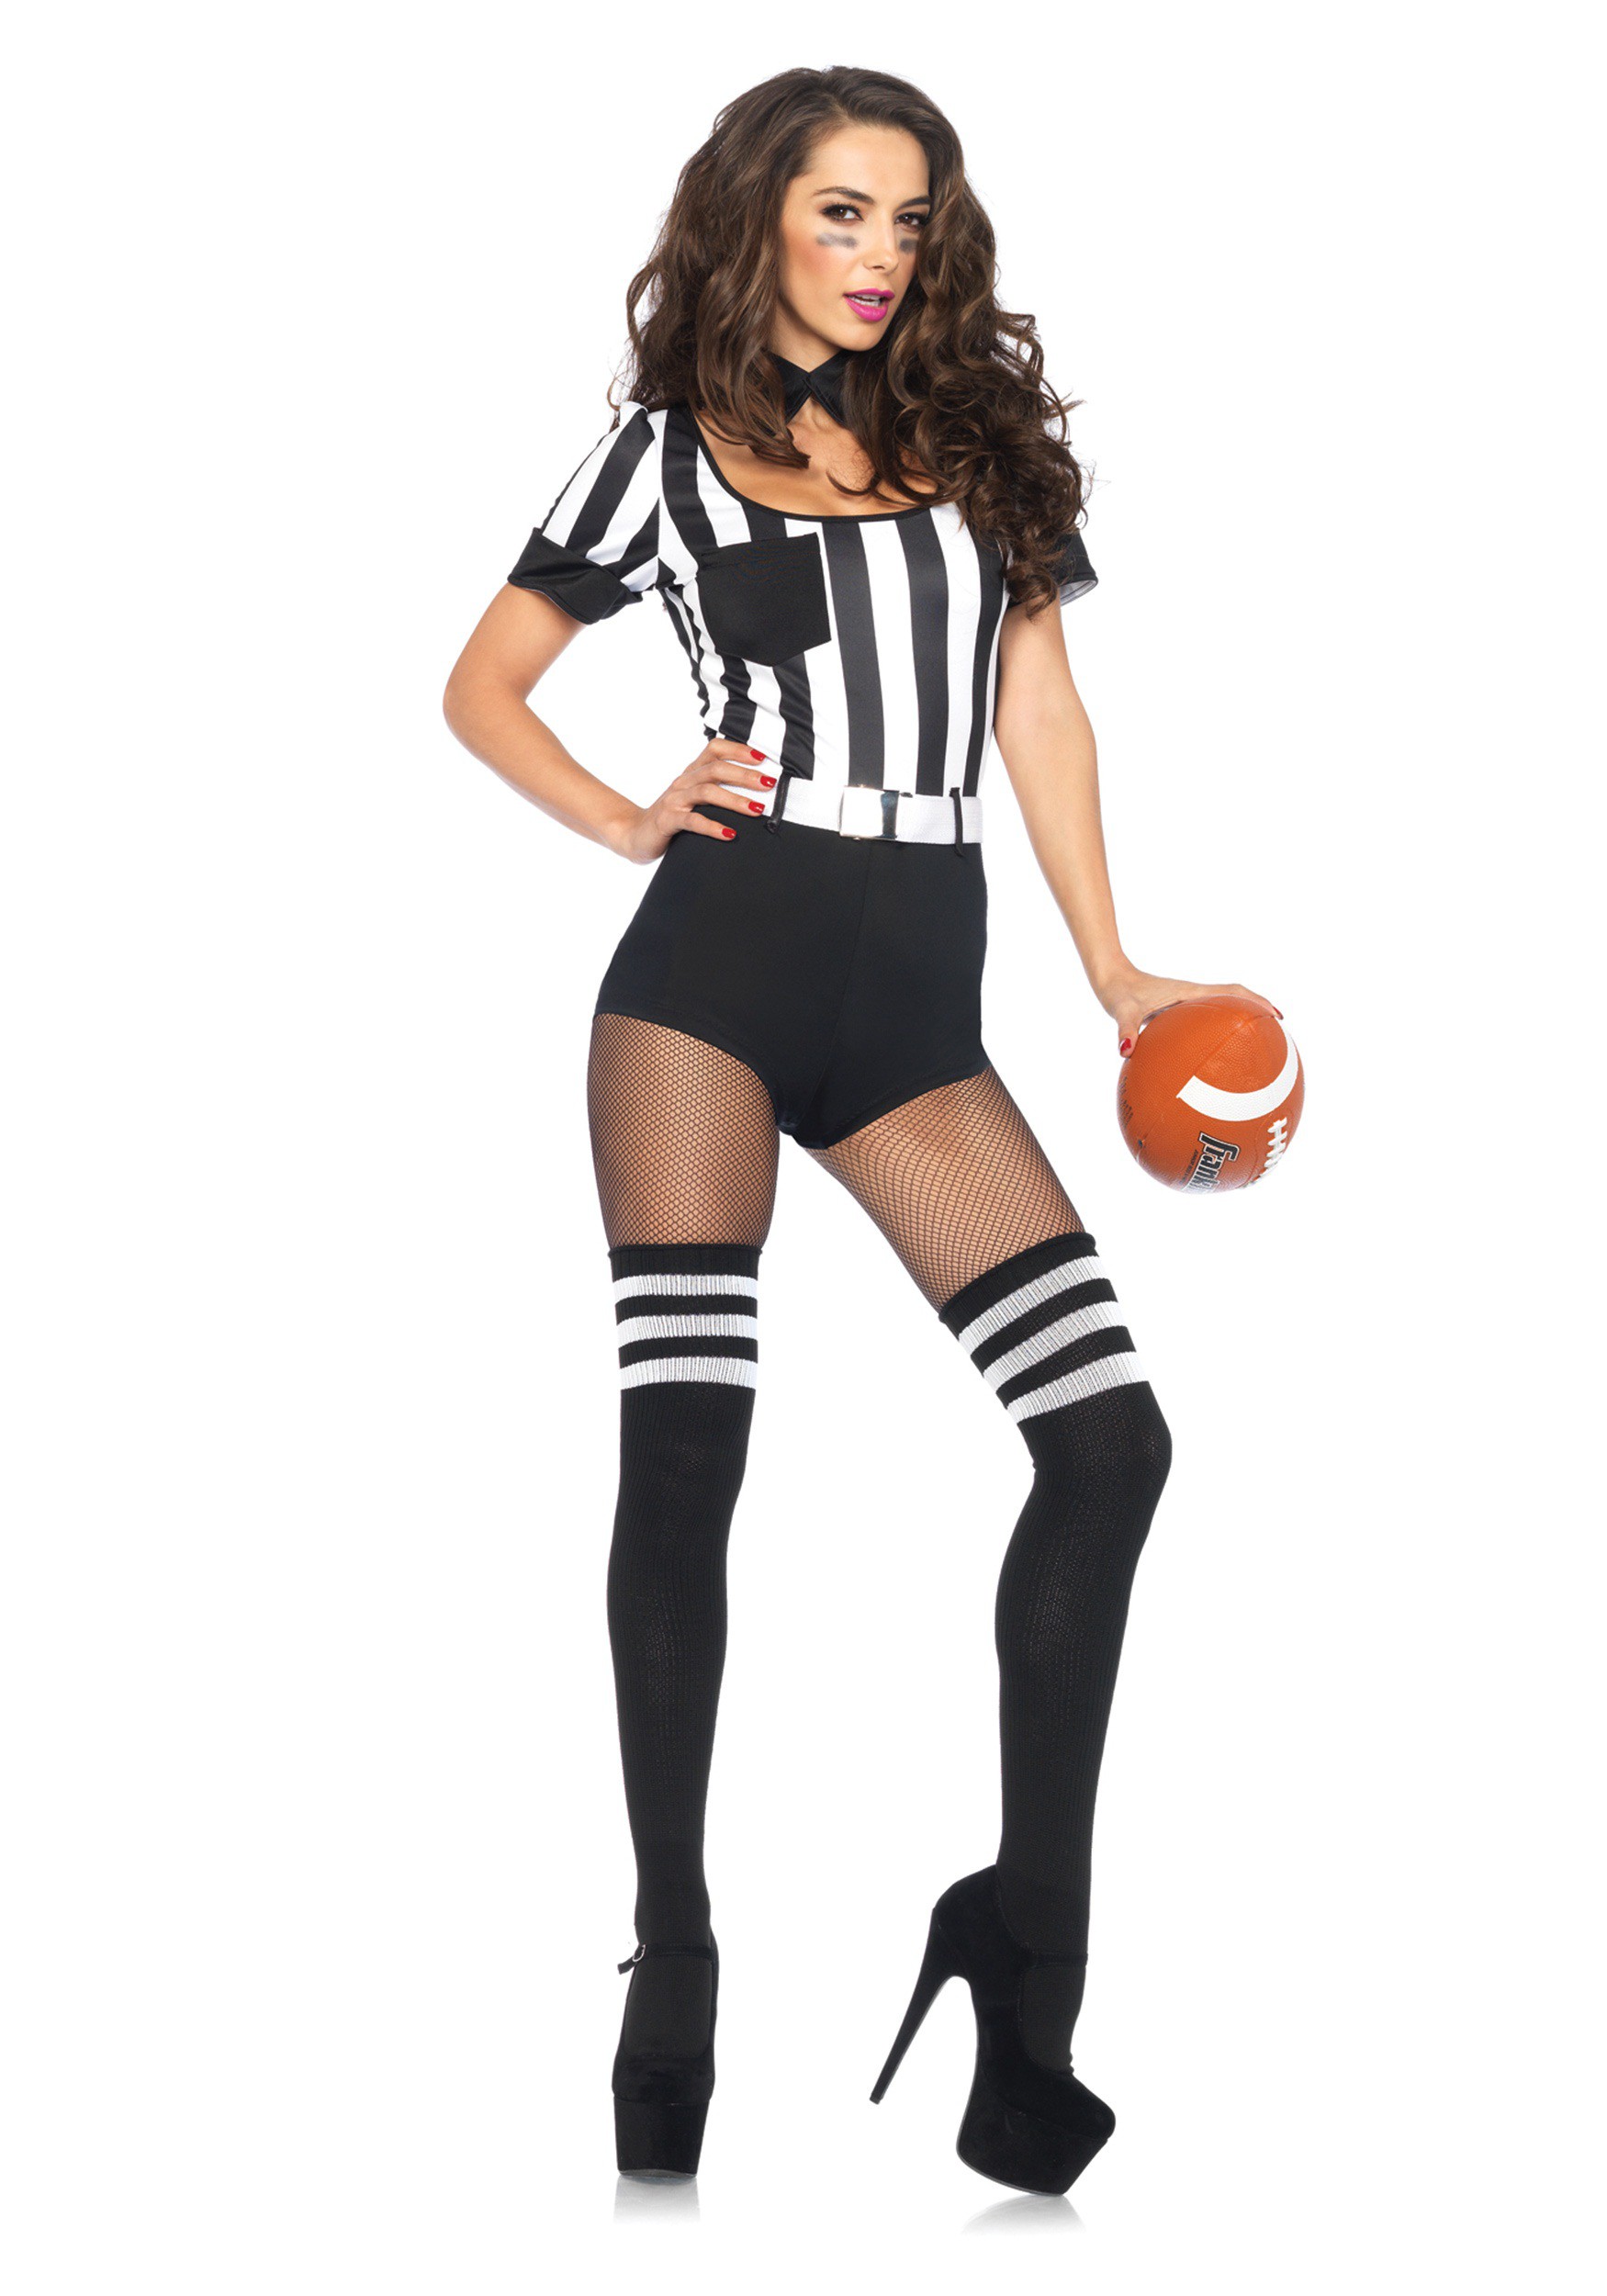 Arbitro Costume for Women